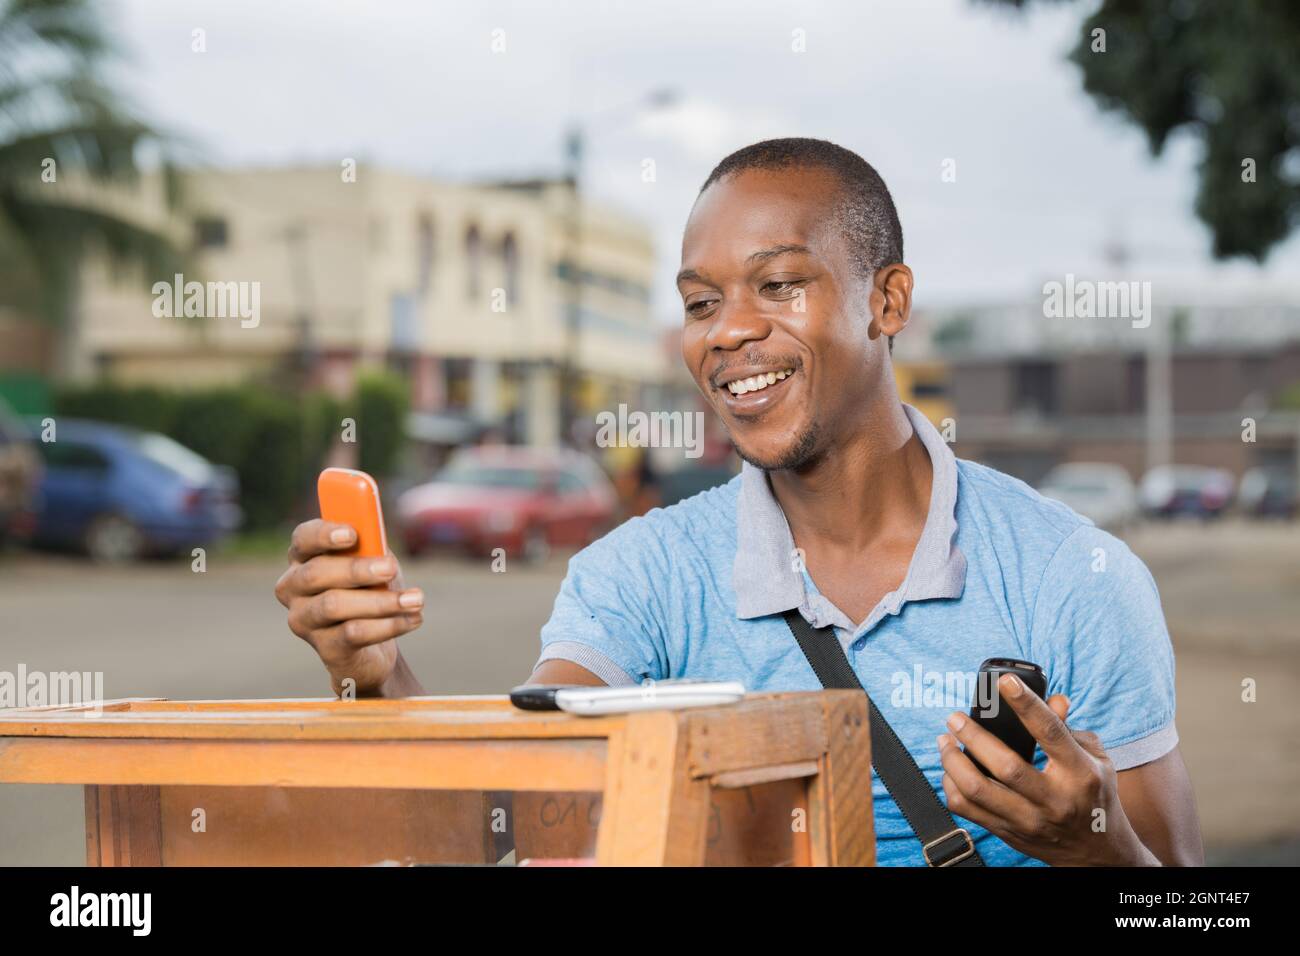 jeune travailleur souriant avec des téléphones en mains Foto Stock